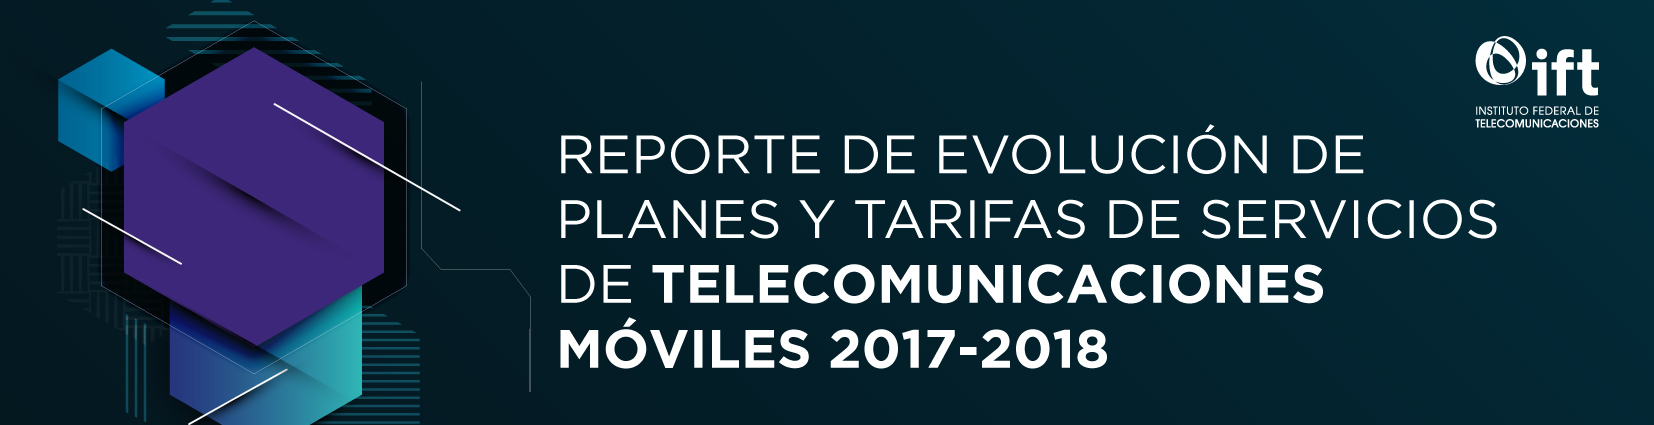 Reporte de Evolución de Planes y Tarifas de Servicios de Telecomunicaciones Móviles 2017-2018